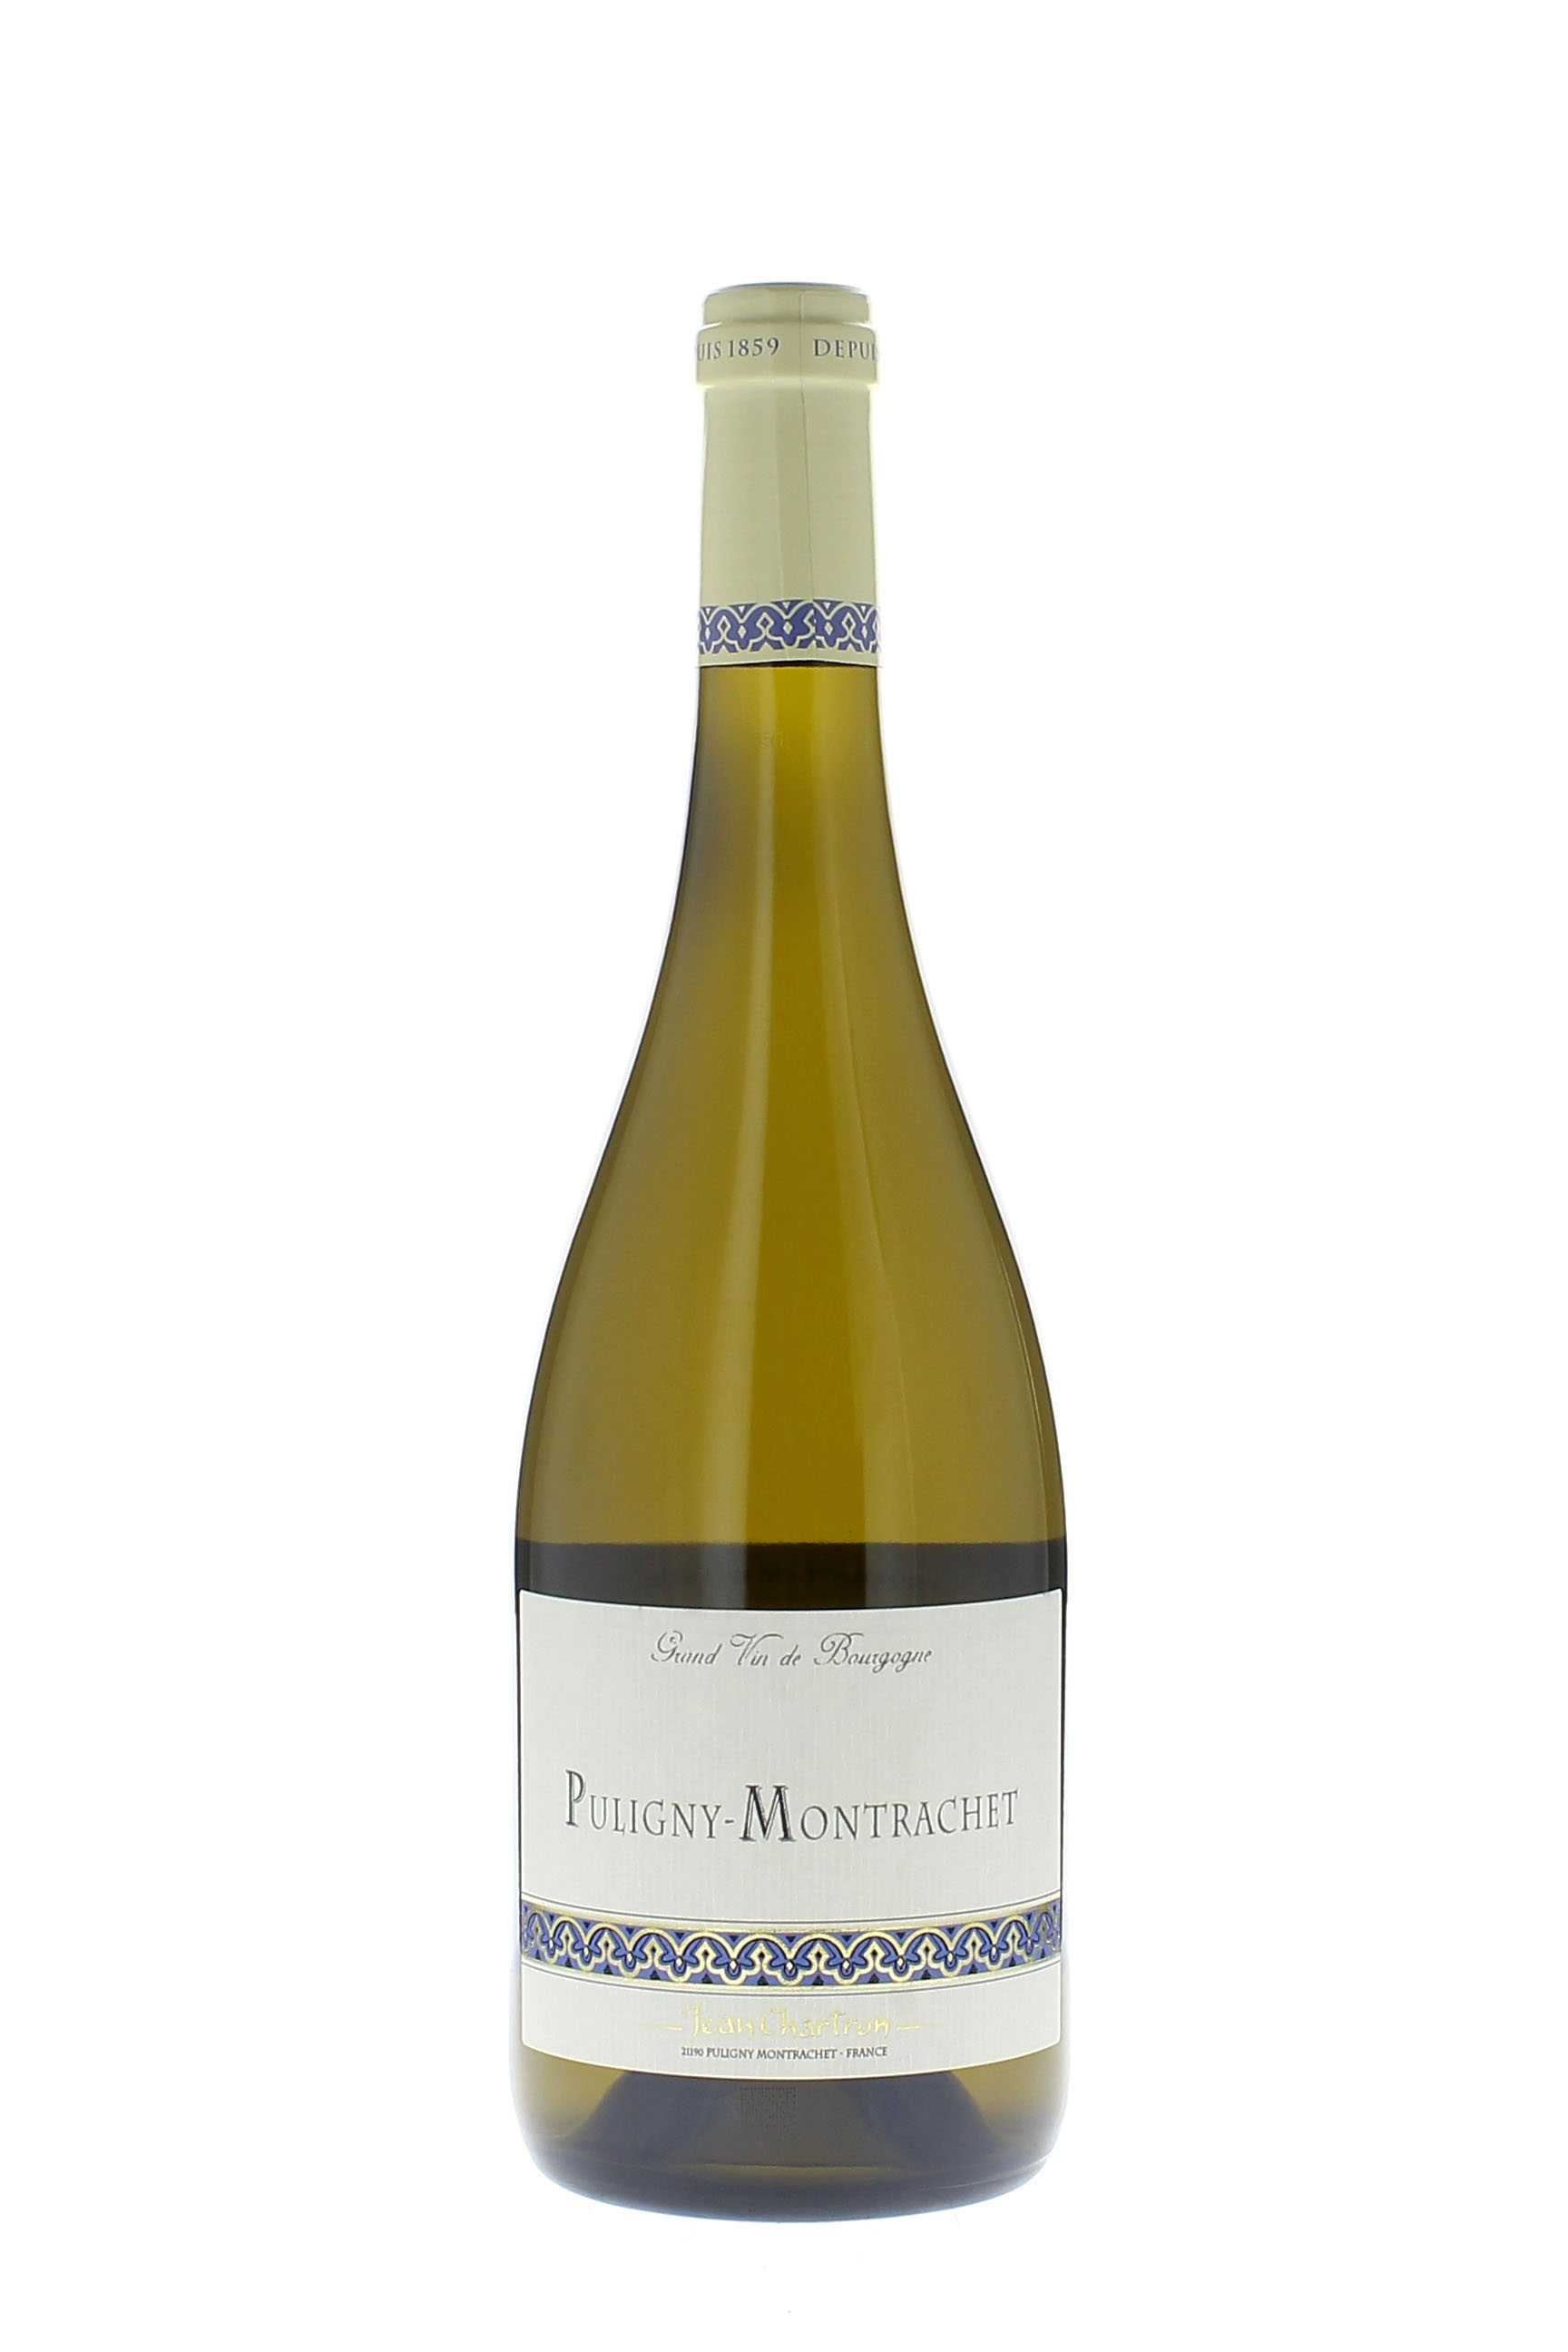 Puligny montrachet 1er cru vieilles vignes 2017 Domaine CHARTRON Jean, Bourgogne blanc